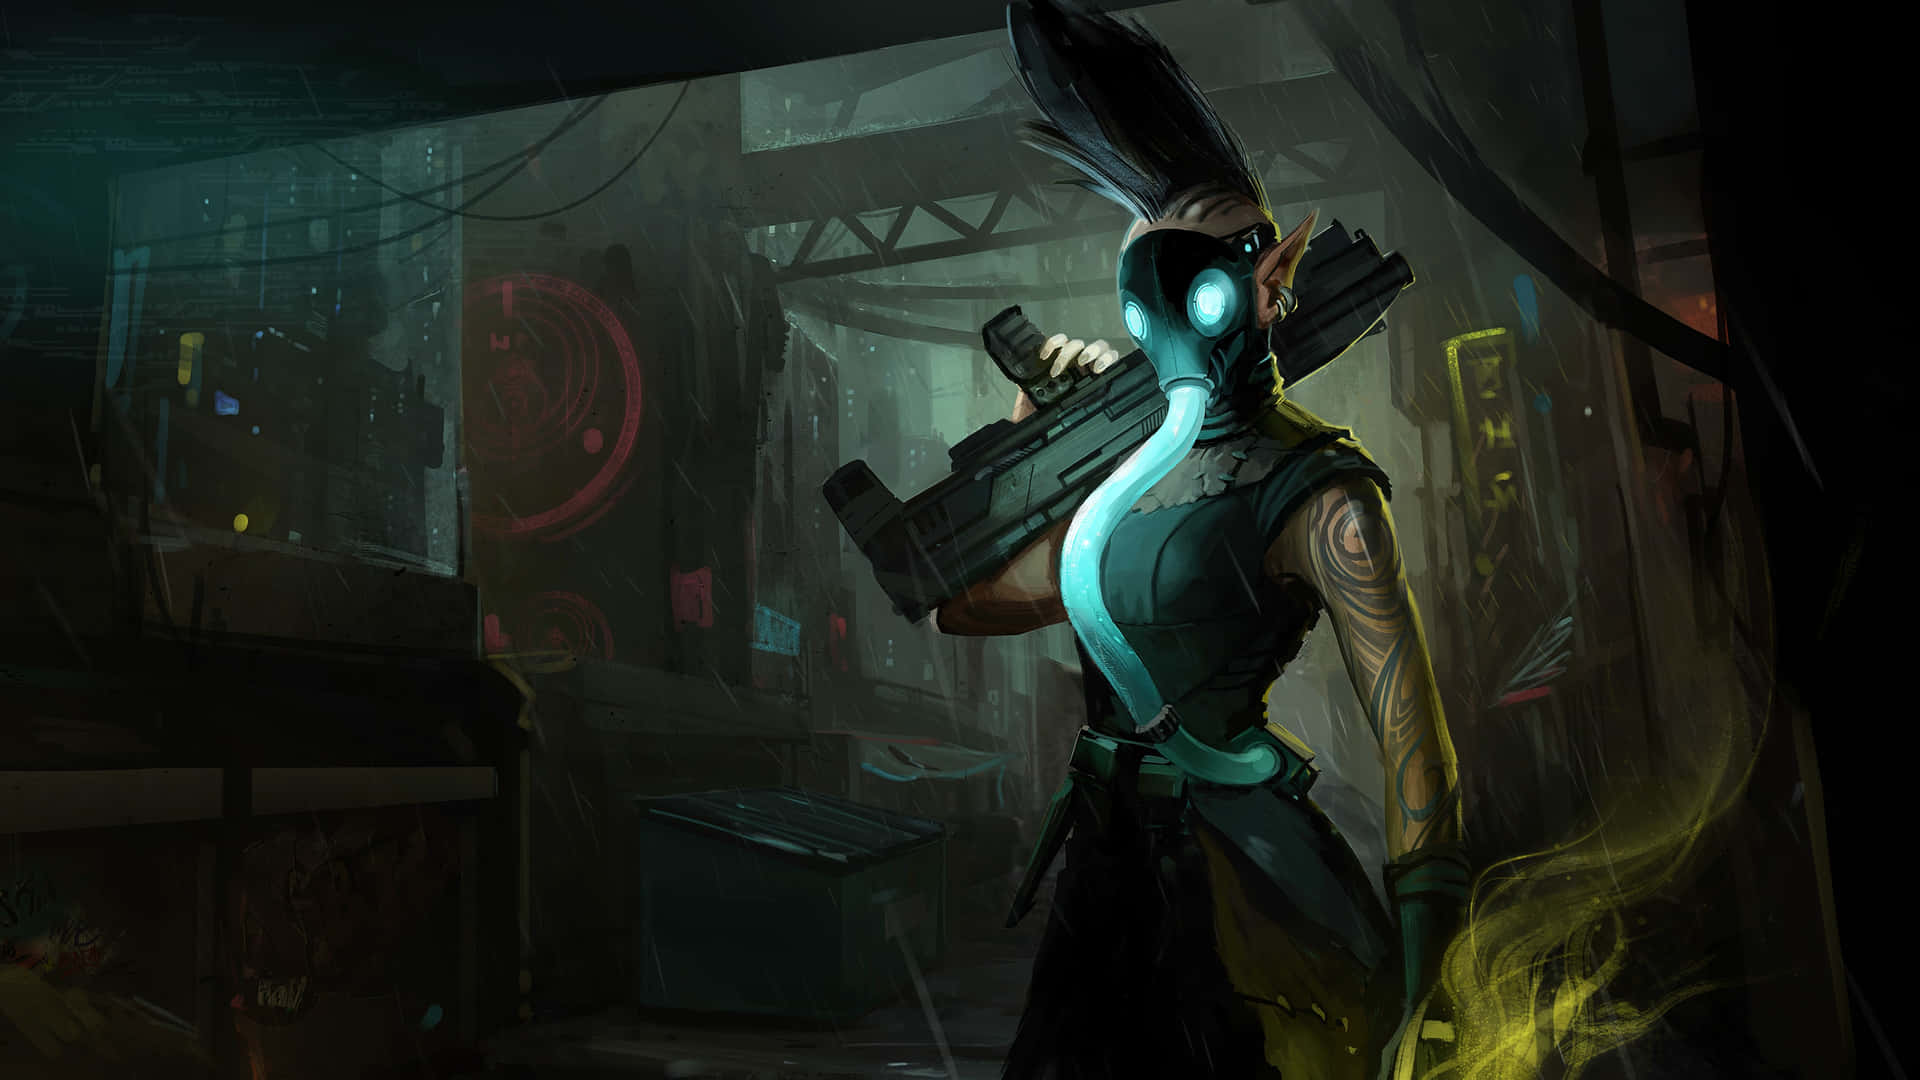 Dyk ind i Shadowrun verden med denne interaktive tapet. Wallpaper